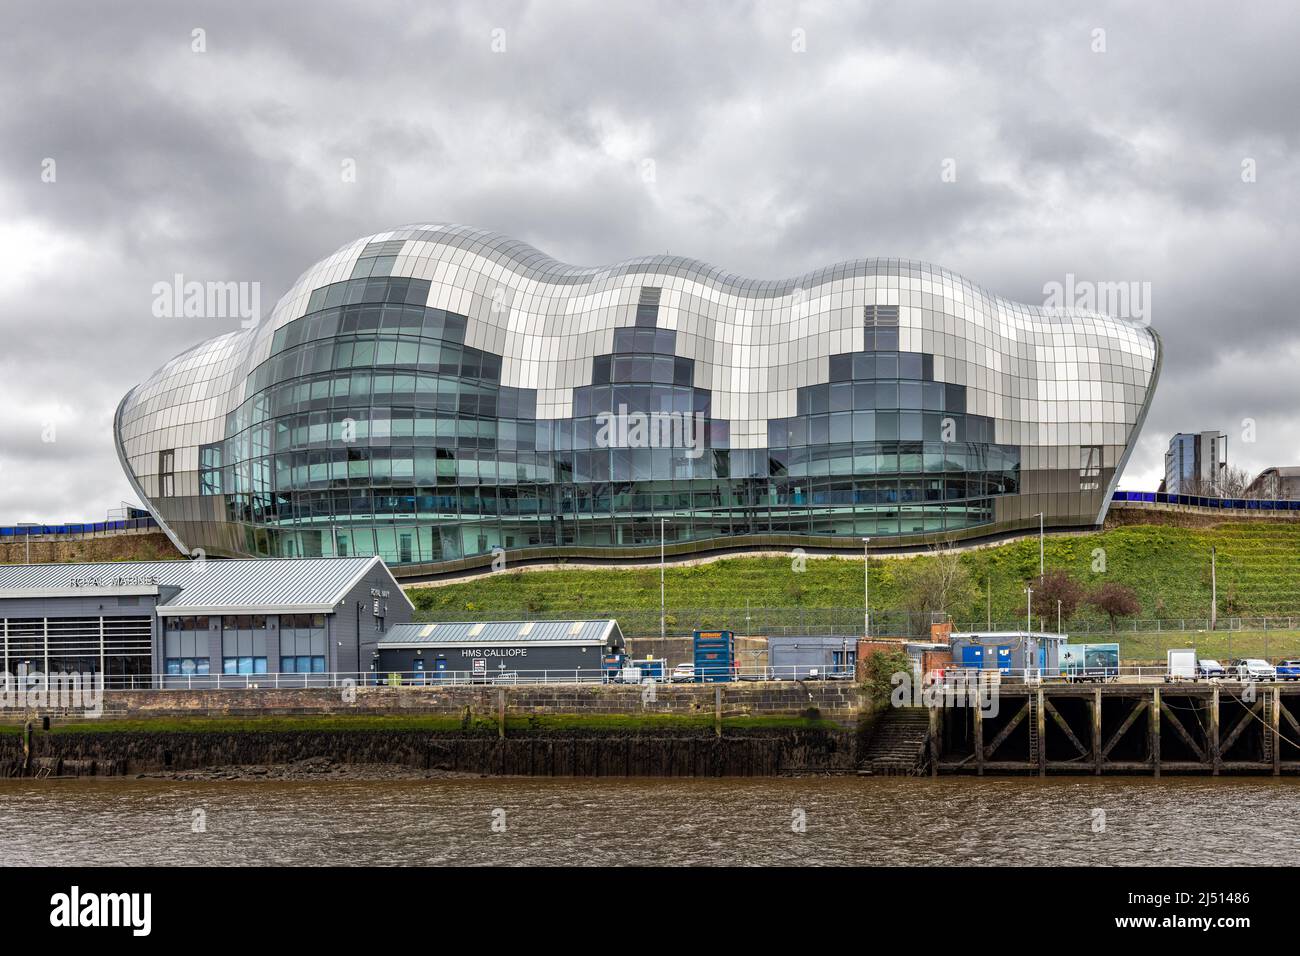 La salle de concert et de musique Sage est située à Gateshead, sur la rive sud de la rivière Tyne. Banque D'Images